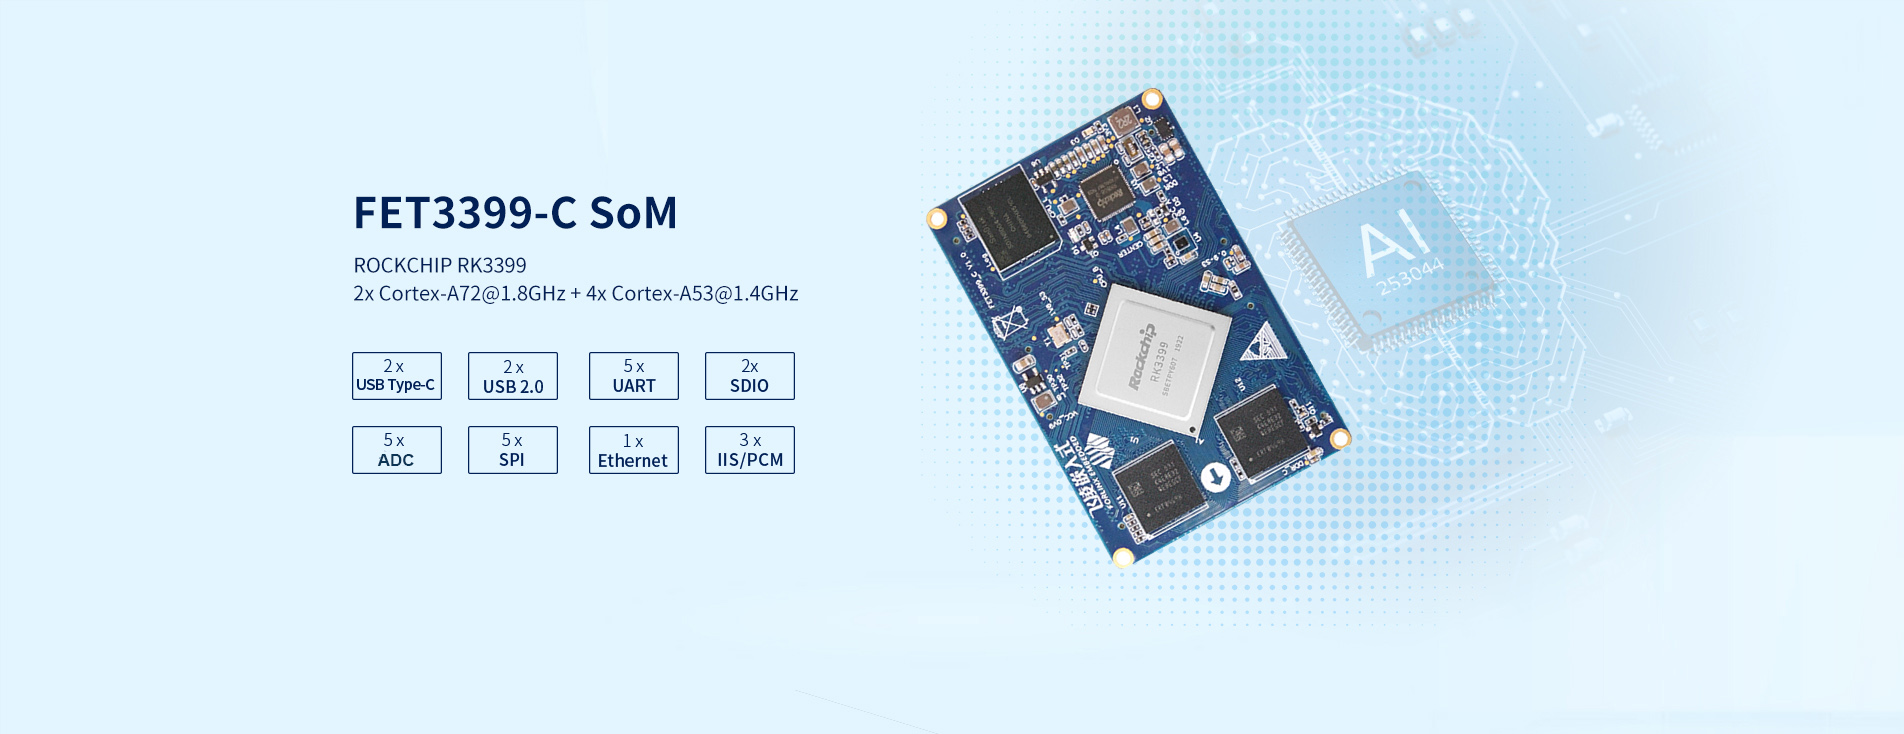 Rockchip Cortex-A72 SoC RK3399 based system on module